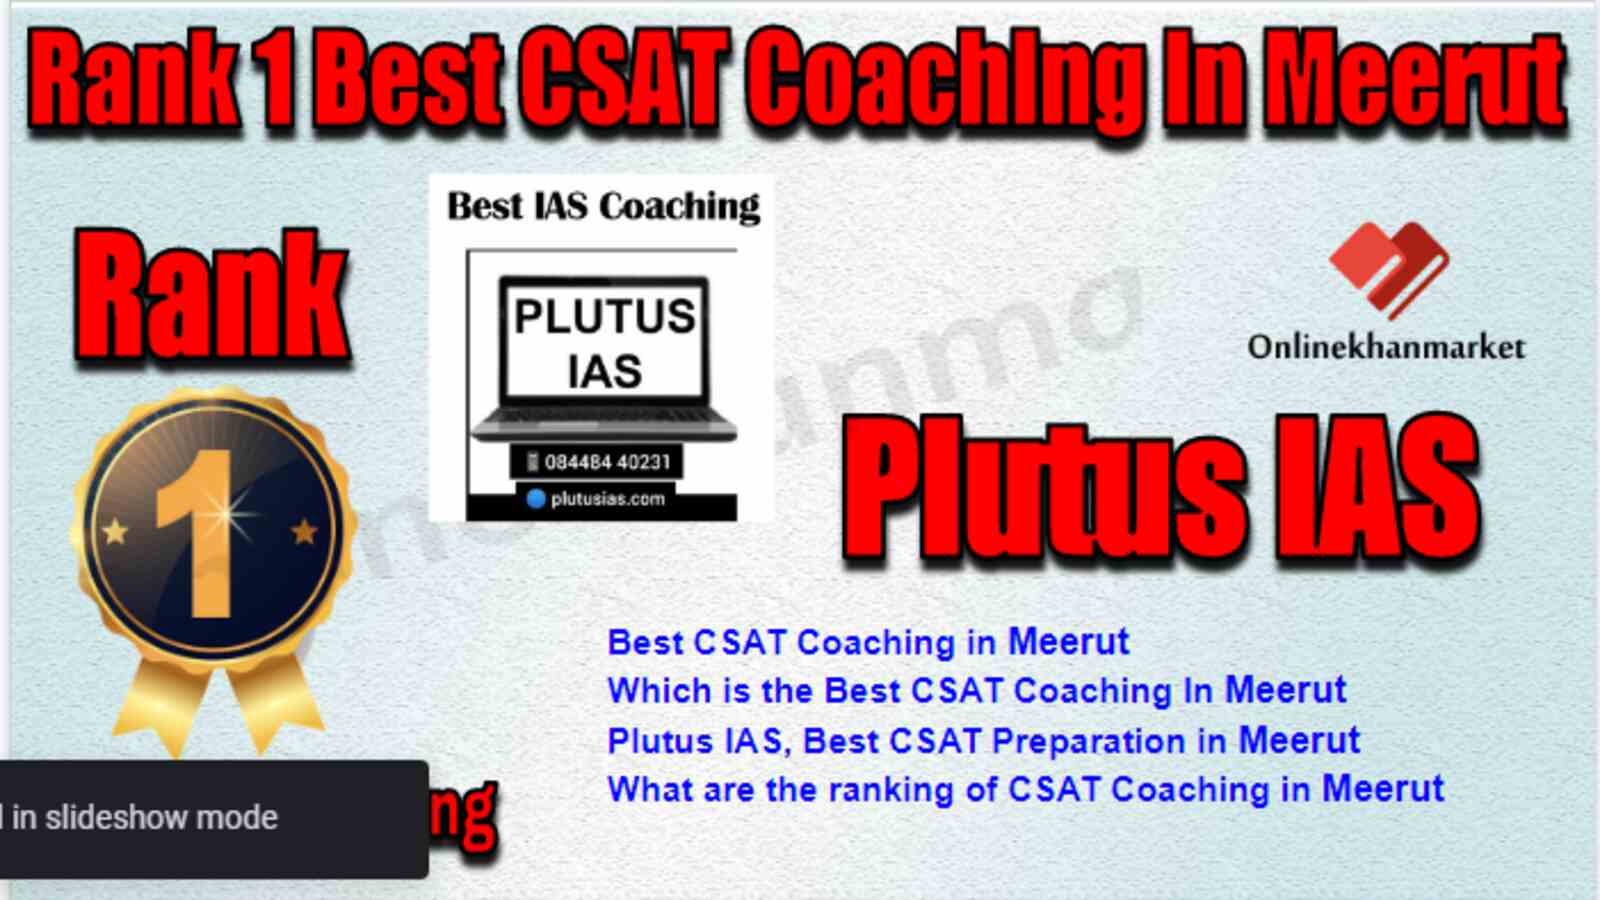 Rank 1 Best CSAT Coaching in Meerut